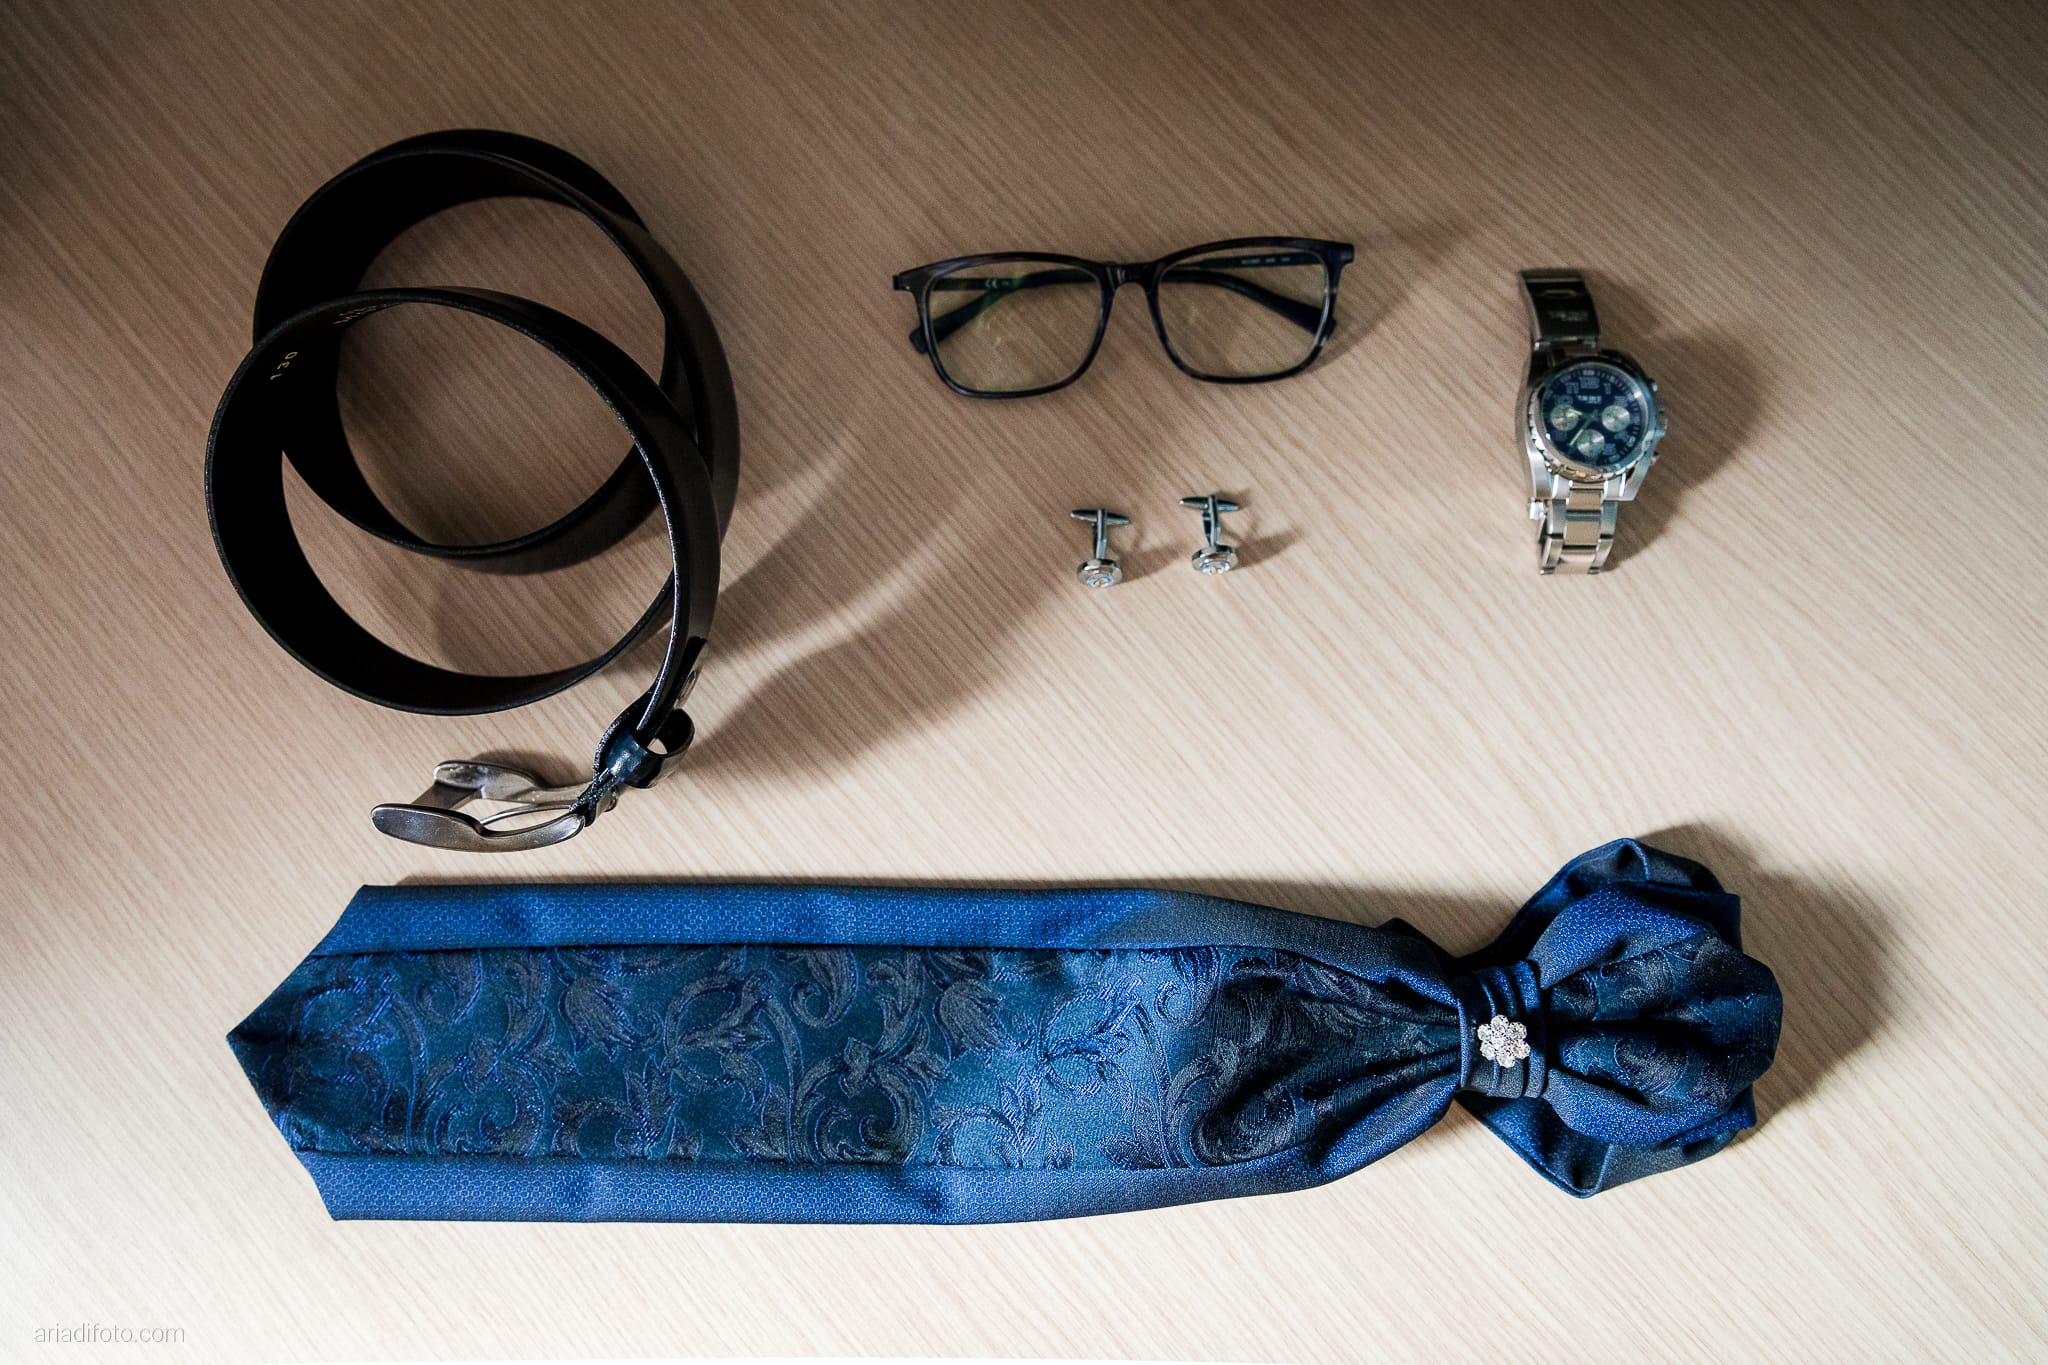 Anna Matteo Matrimonio Parco di Buttrio Udine preparativi sposo dettagli cintura cravatta gemelli orologio occhiali